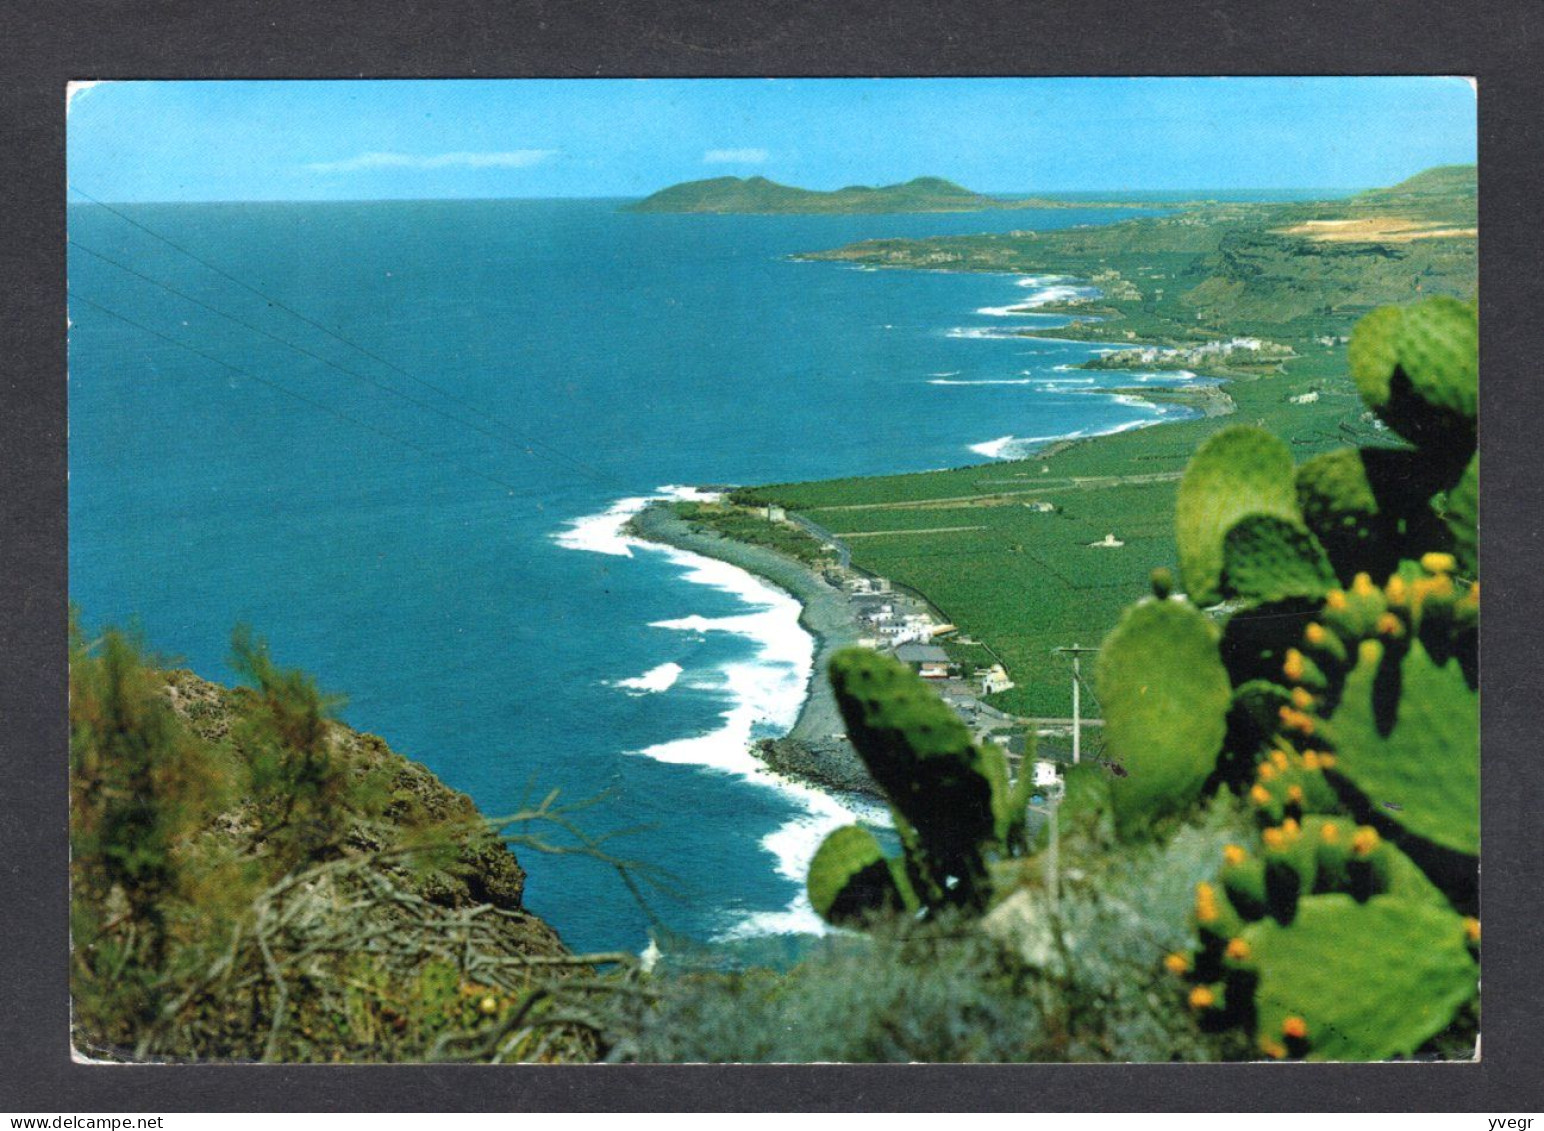 Espagne - 6192 - LAS PALMAS De Gran Canaria -Costa Norte- Vue Aérienne De La Côte (ediciones Islas S.a. N° 6192) De 1974 - La Palma